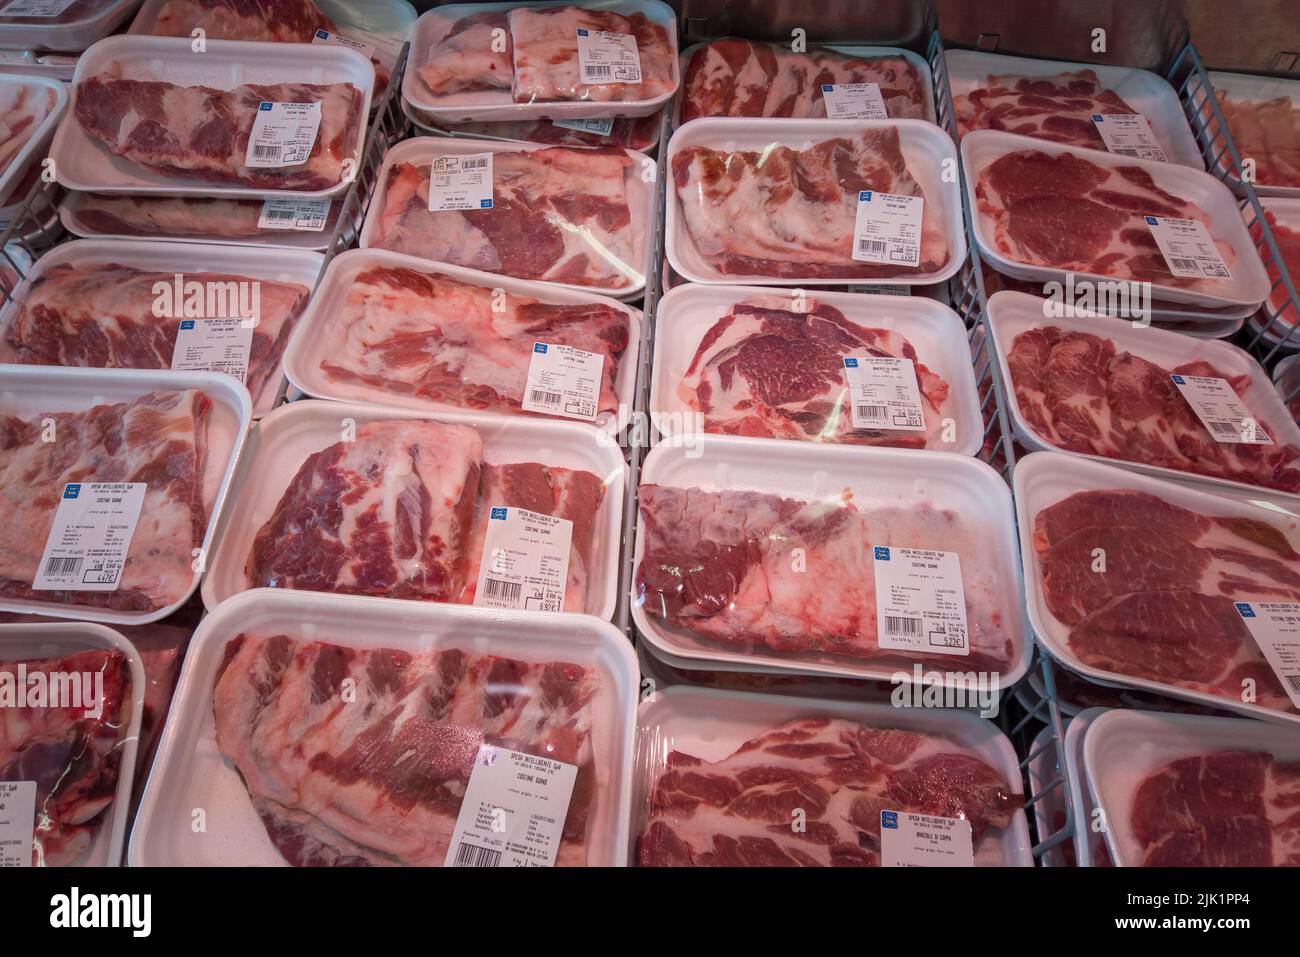 Fossano, Italia - 29 luglio 2022: Costolette di maiale crudo pronte per il barbecue in vassoi di plastica nel banco frigorifero del supermercato italiano Eurospin. Foto Stock